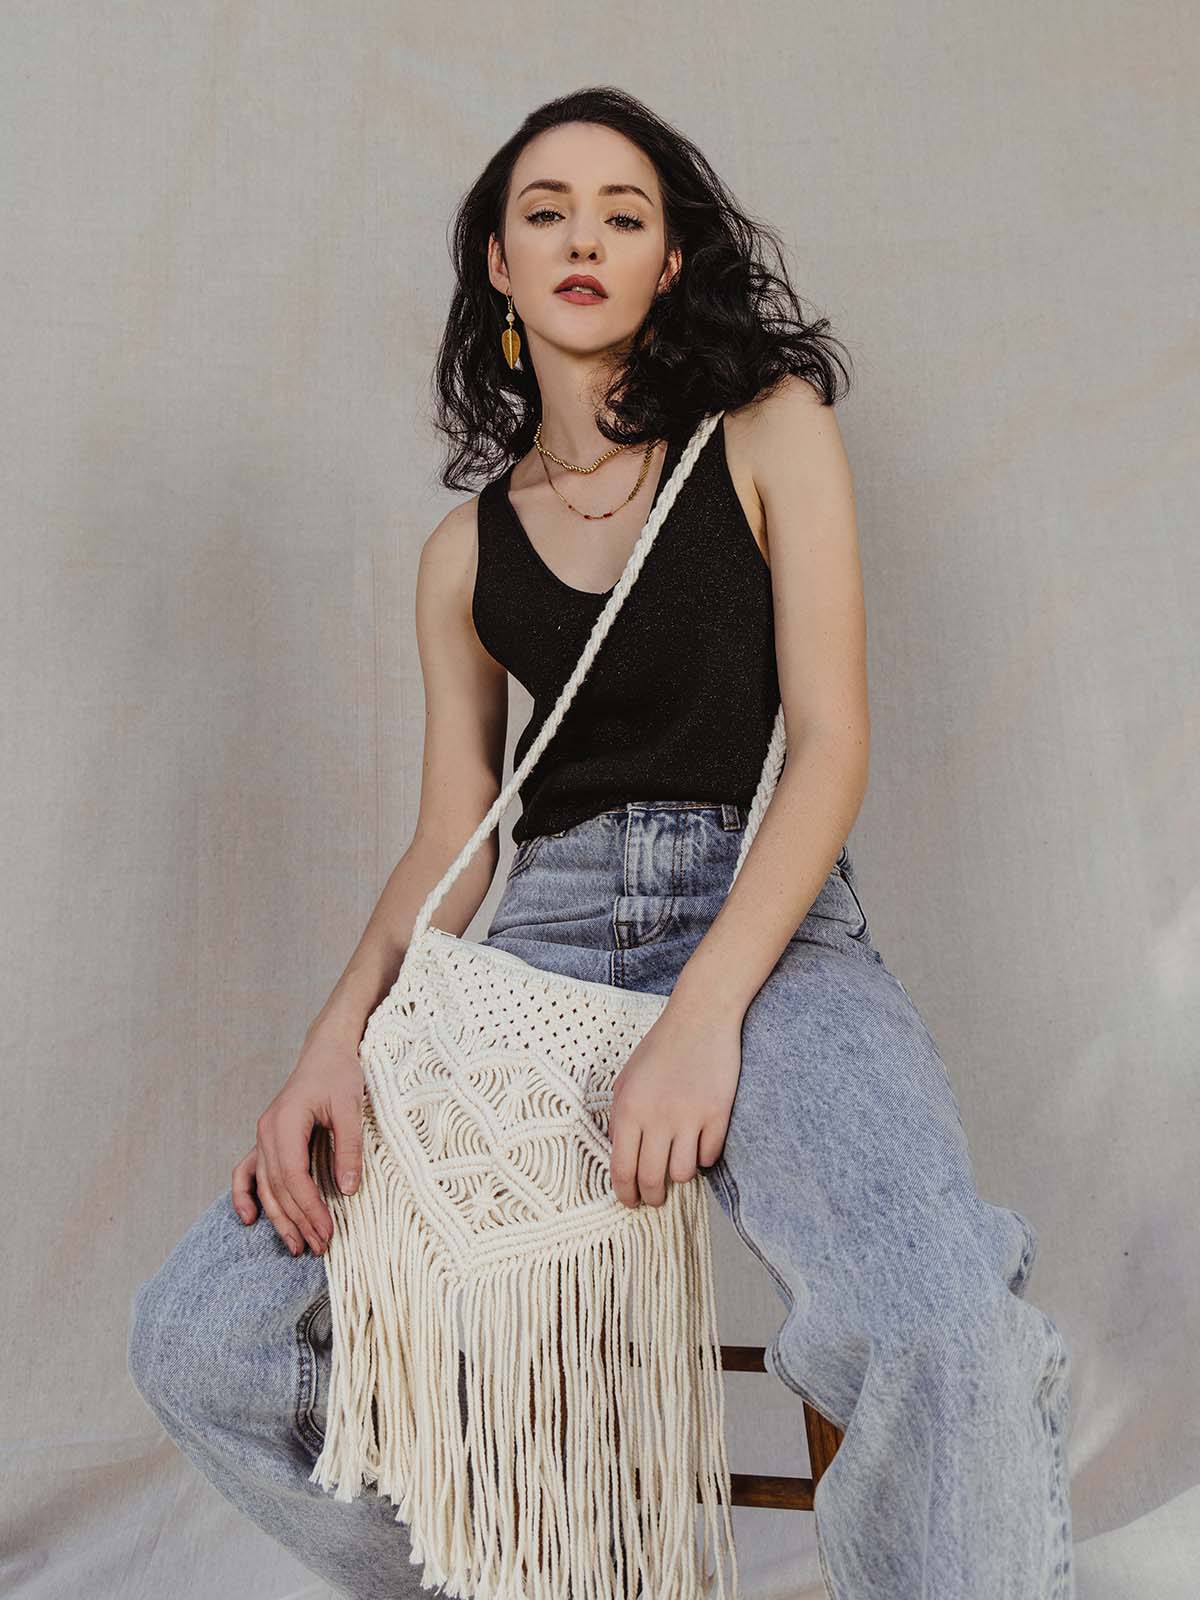 Female model wearing Macrame purse in black tank and jeans crossbody.